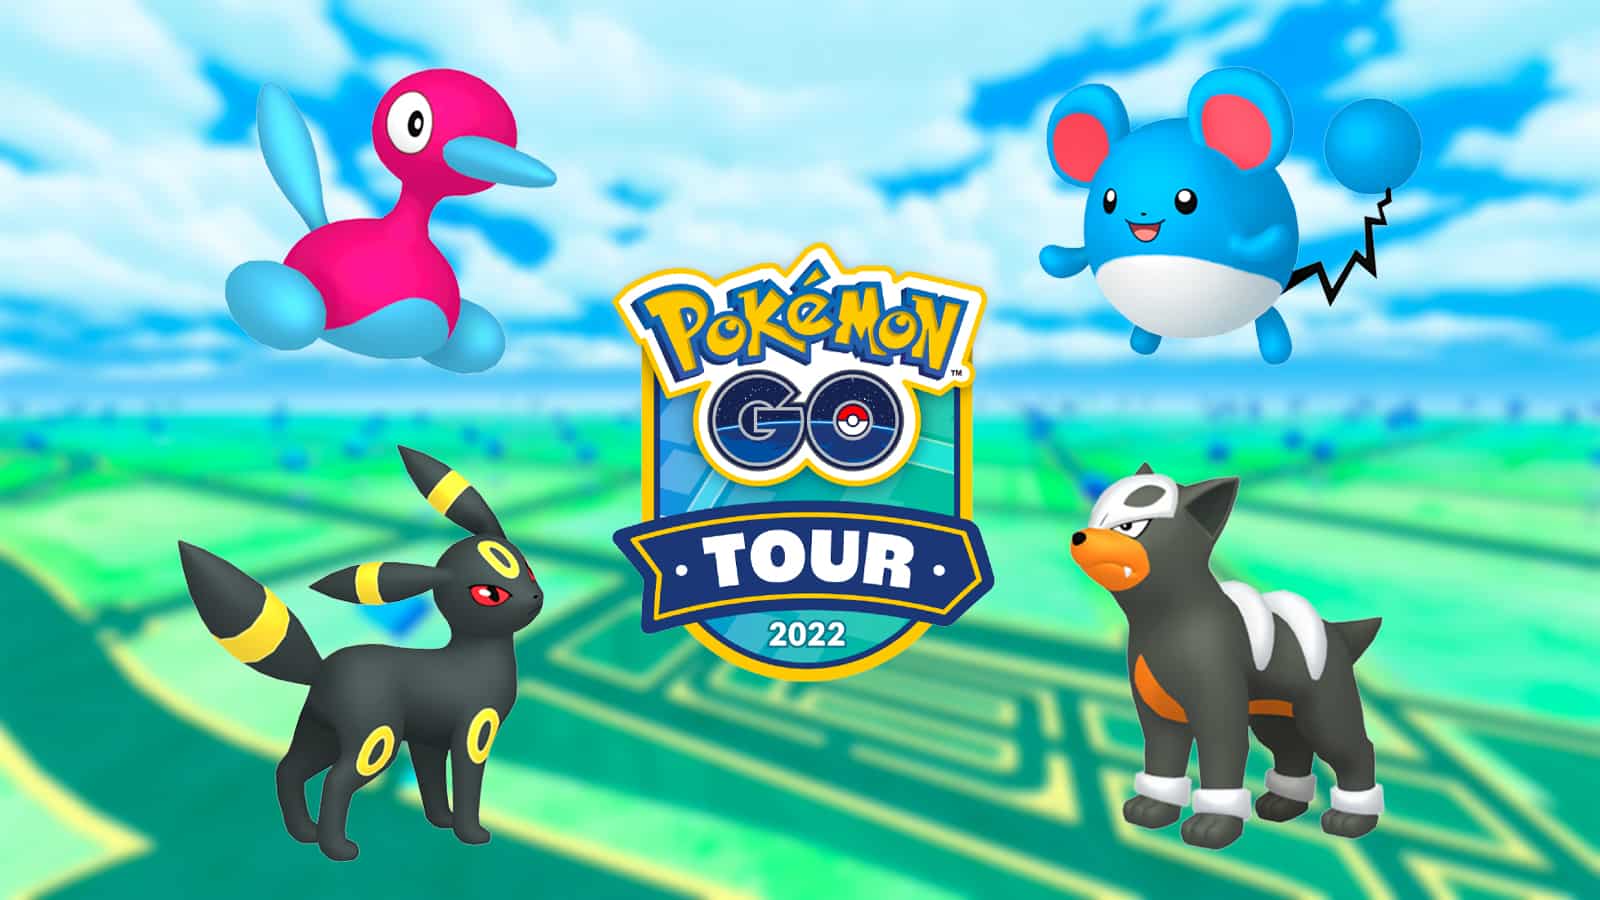 Pokémon GO Tour returns! Next stop: Johto!